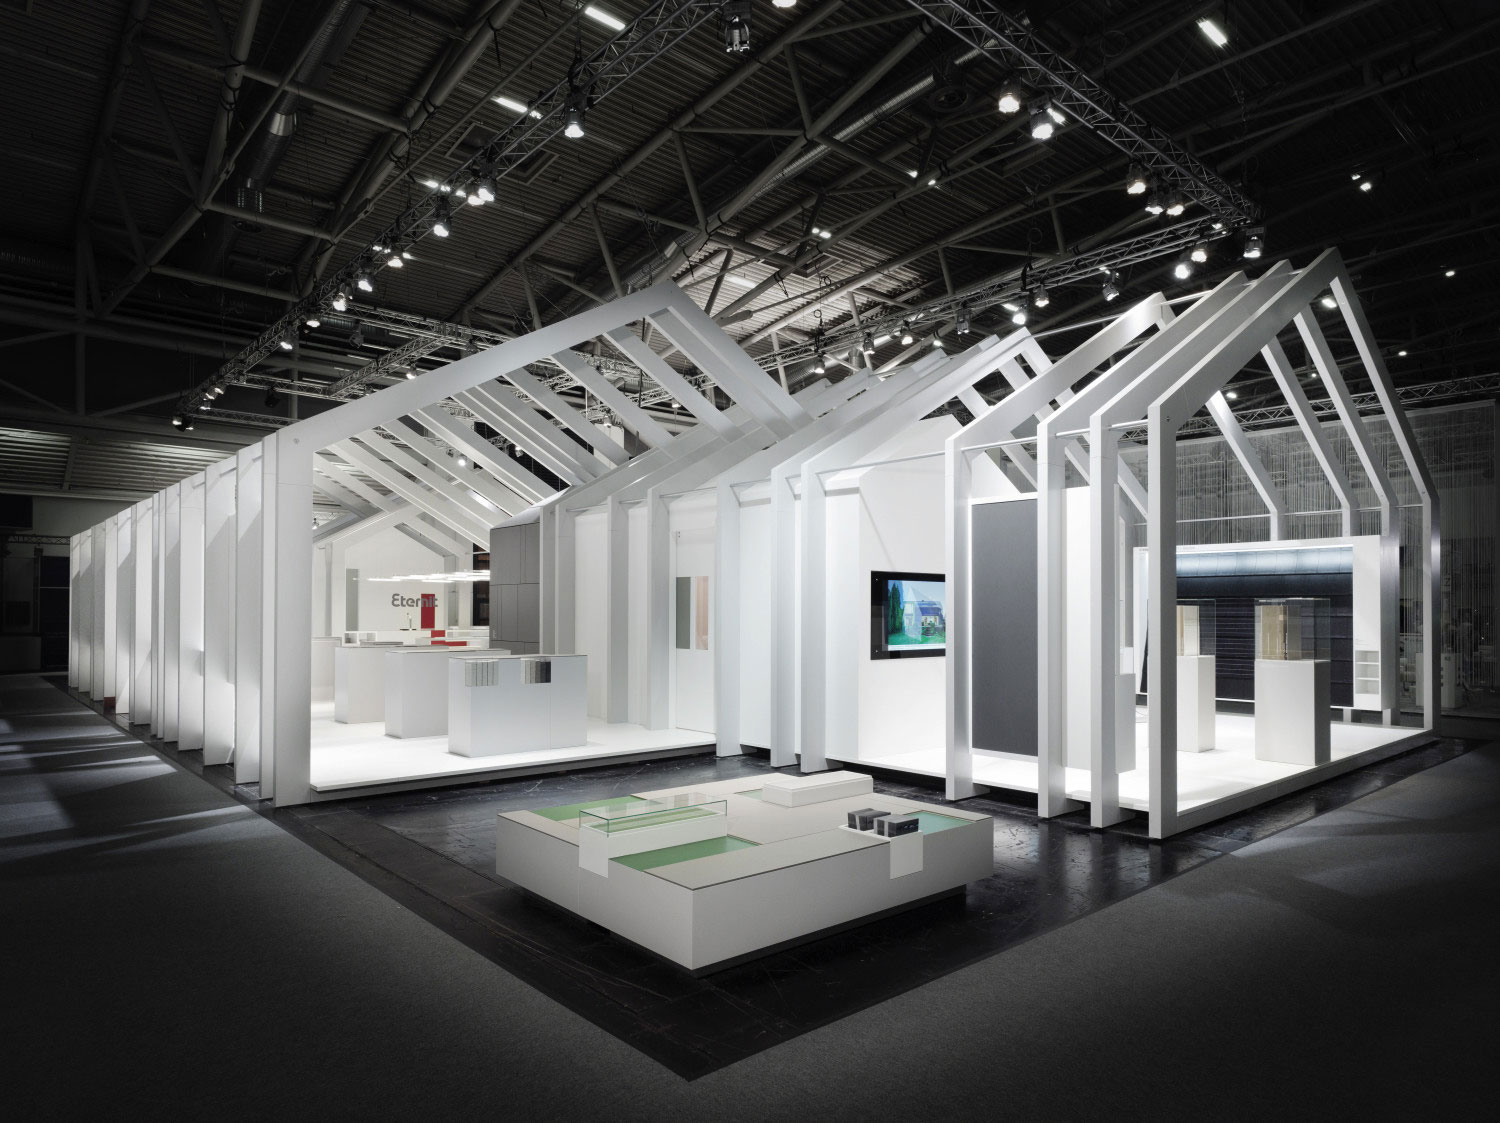 Stánok firmy Eternit AG, navrhnutý berlínskou architektkou Astrid Bornheim, získal prestížnu zlatú cenu Exhibit Design Award 2015 za dizajn výstavných plôch